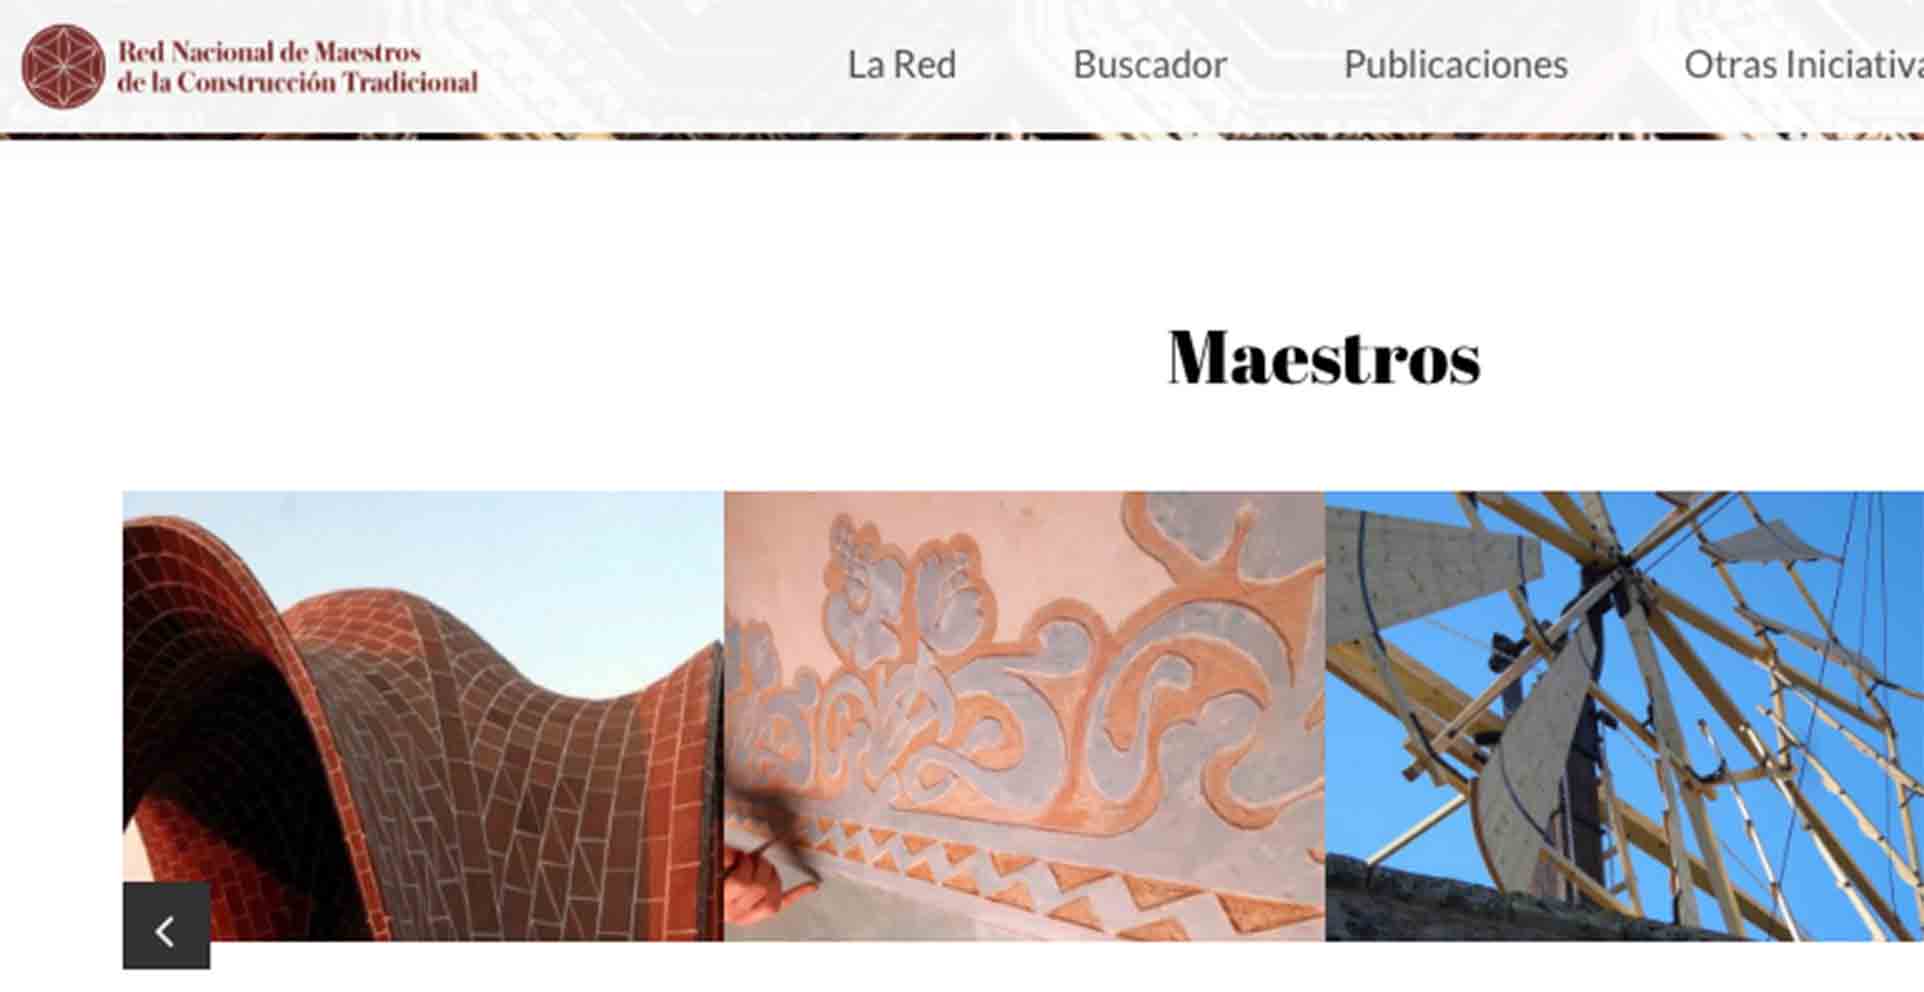 La Red de Nacional de Maestros Artesanos de la Construcción Tradicional, afincada en Bargas (Toledo), ha sido seleccionada como finalista en los Premios Nacionales de Artesanía.